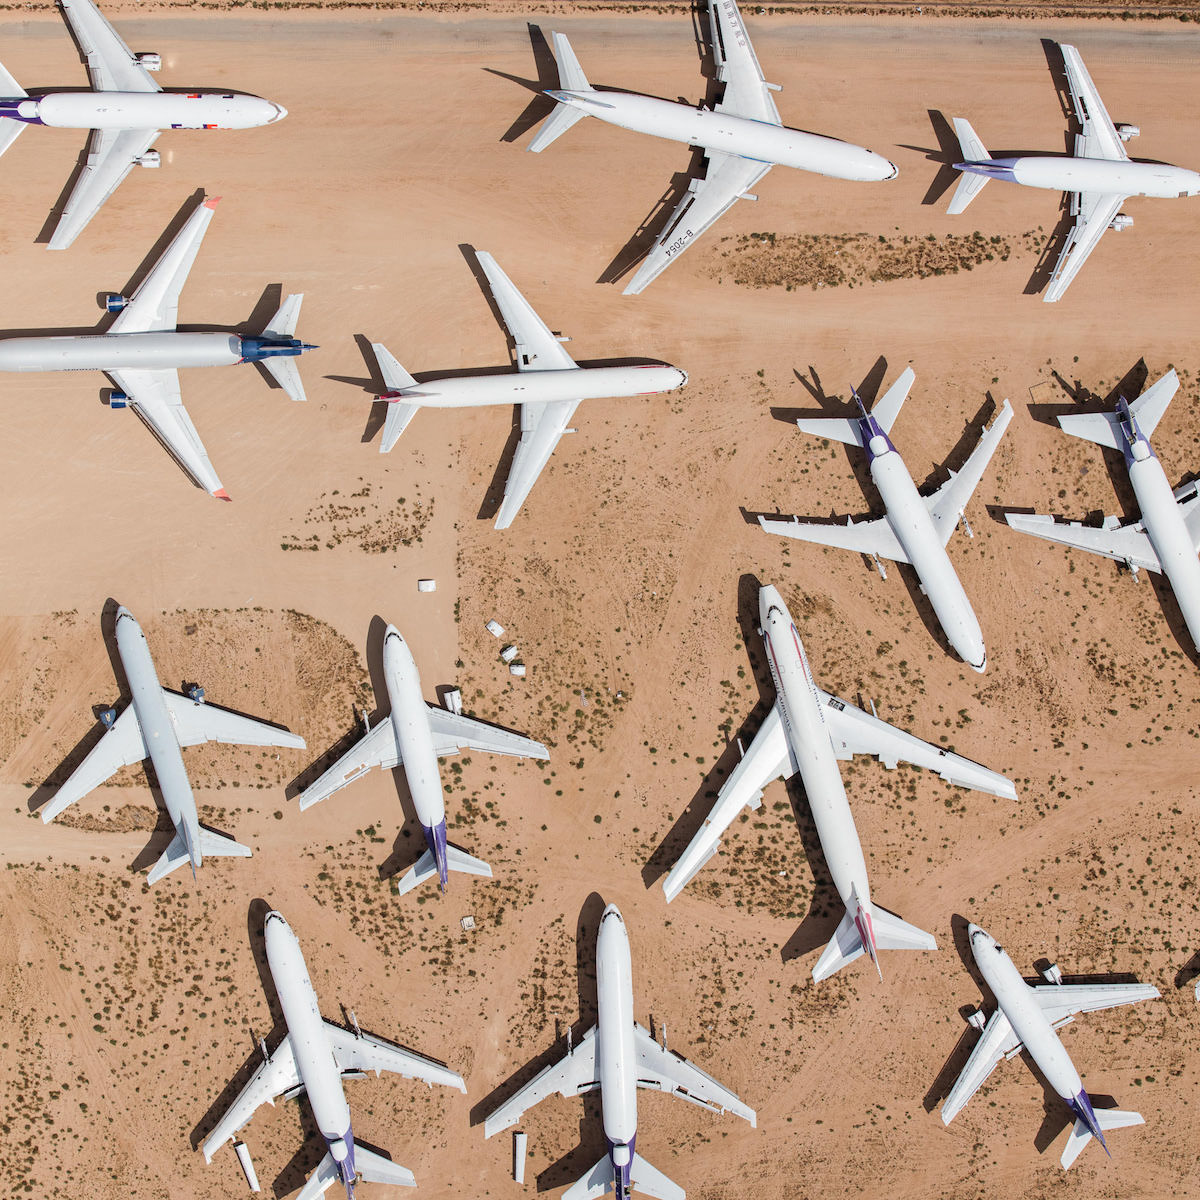 Благодаря пустынному засушливому климату, самолеты здесь хорошо сохраняются, и часть из них еще может взлететь во флоте новой авиакомпании.